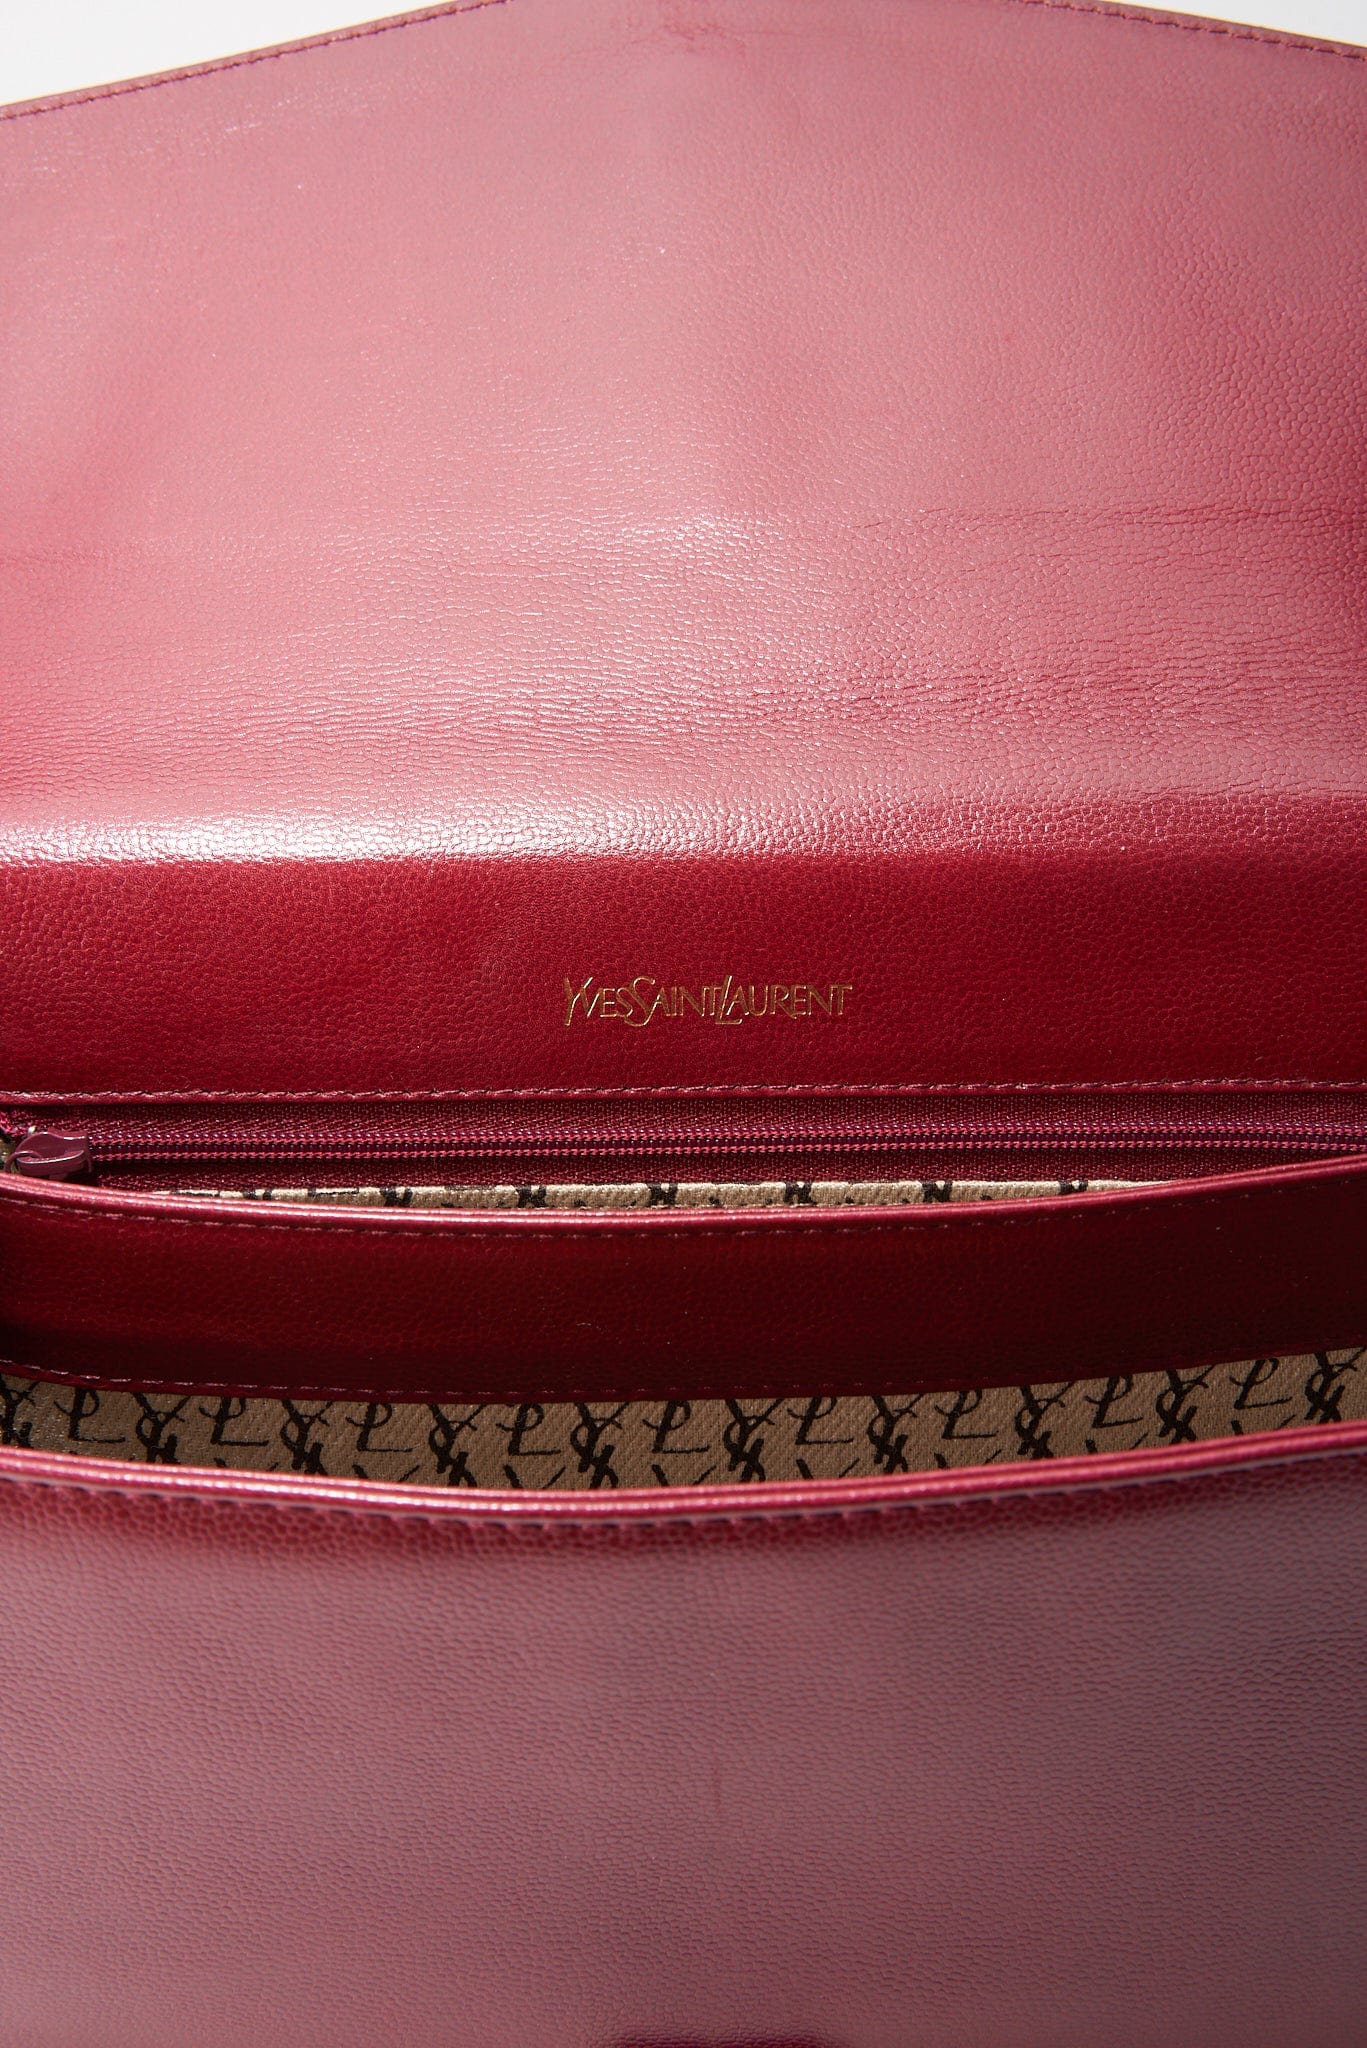 Vintage Red Leather YSL Leather Satchel Handbag